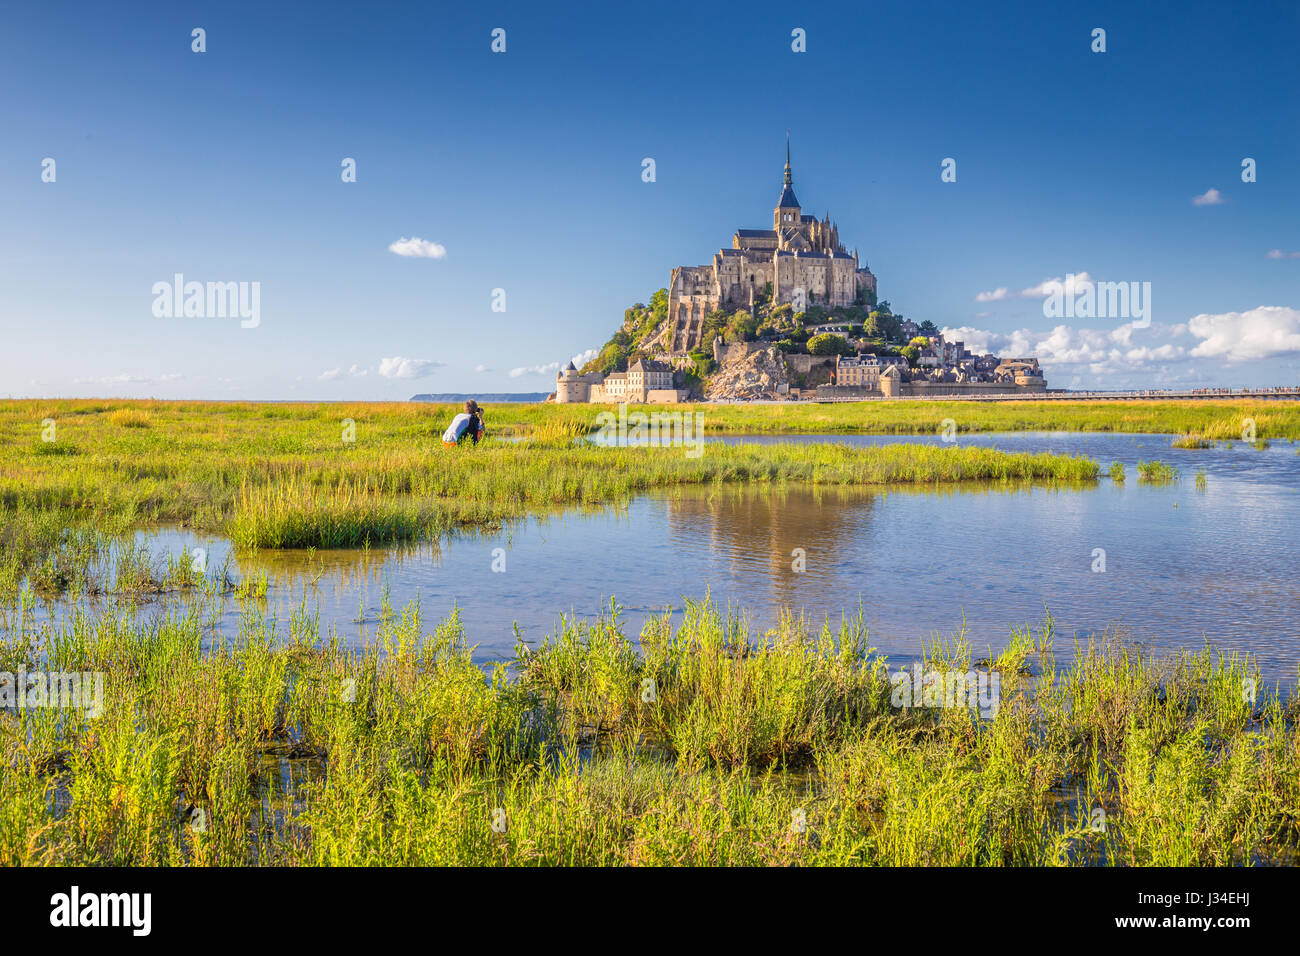 La vue classique du célèbre quartier historique Le Mont Saint-Michel tidal island lors d'une journée ensoleillée avec ciel bleu et nuages en été, la Normandie, le nord de la France Banque D'Images